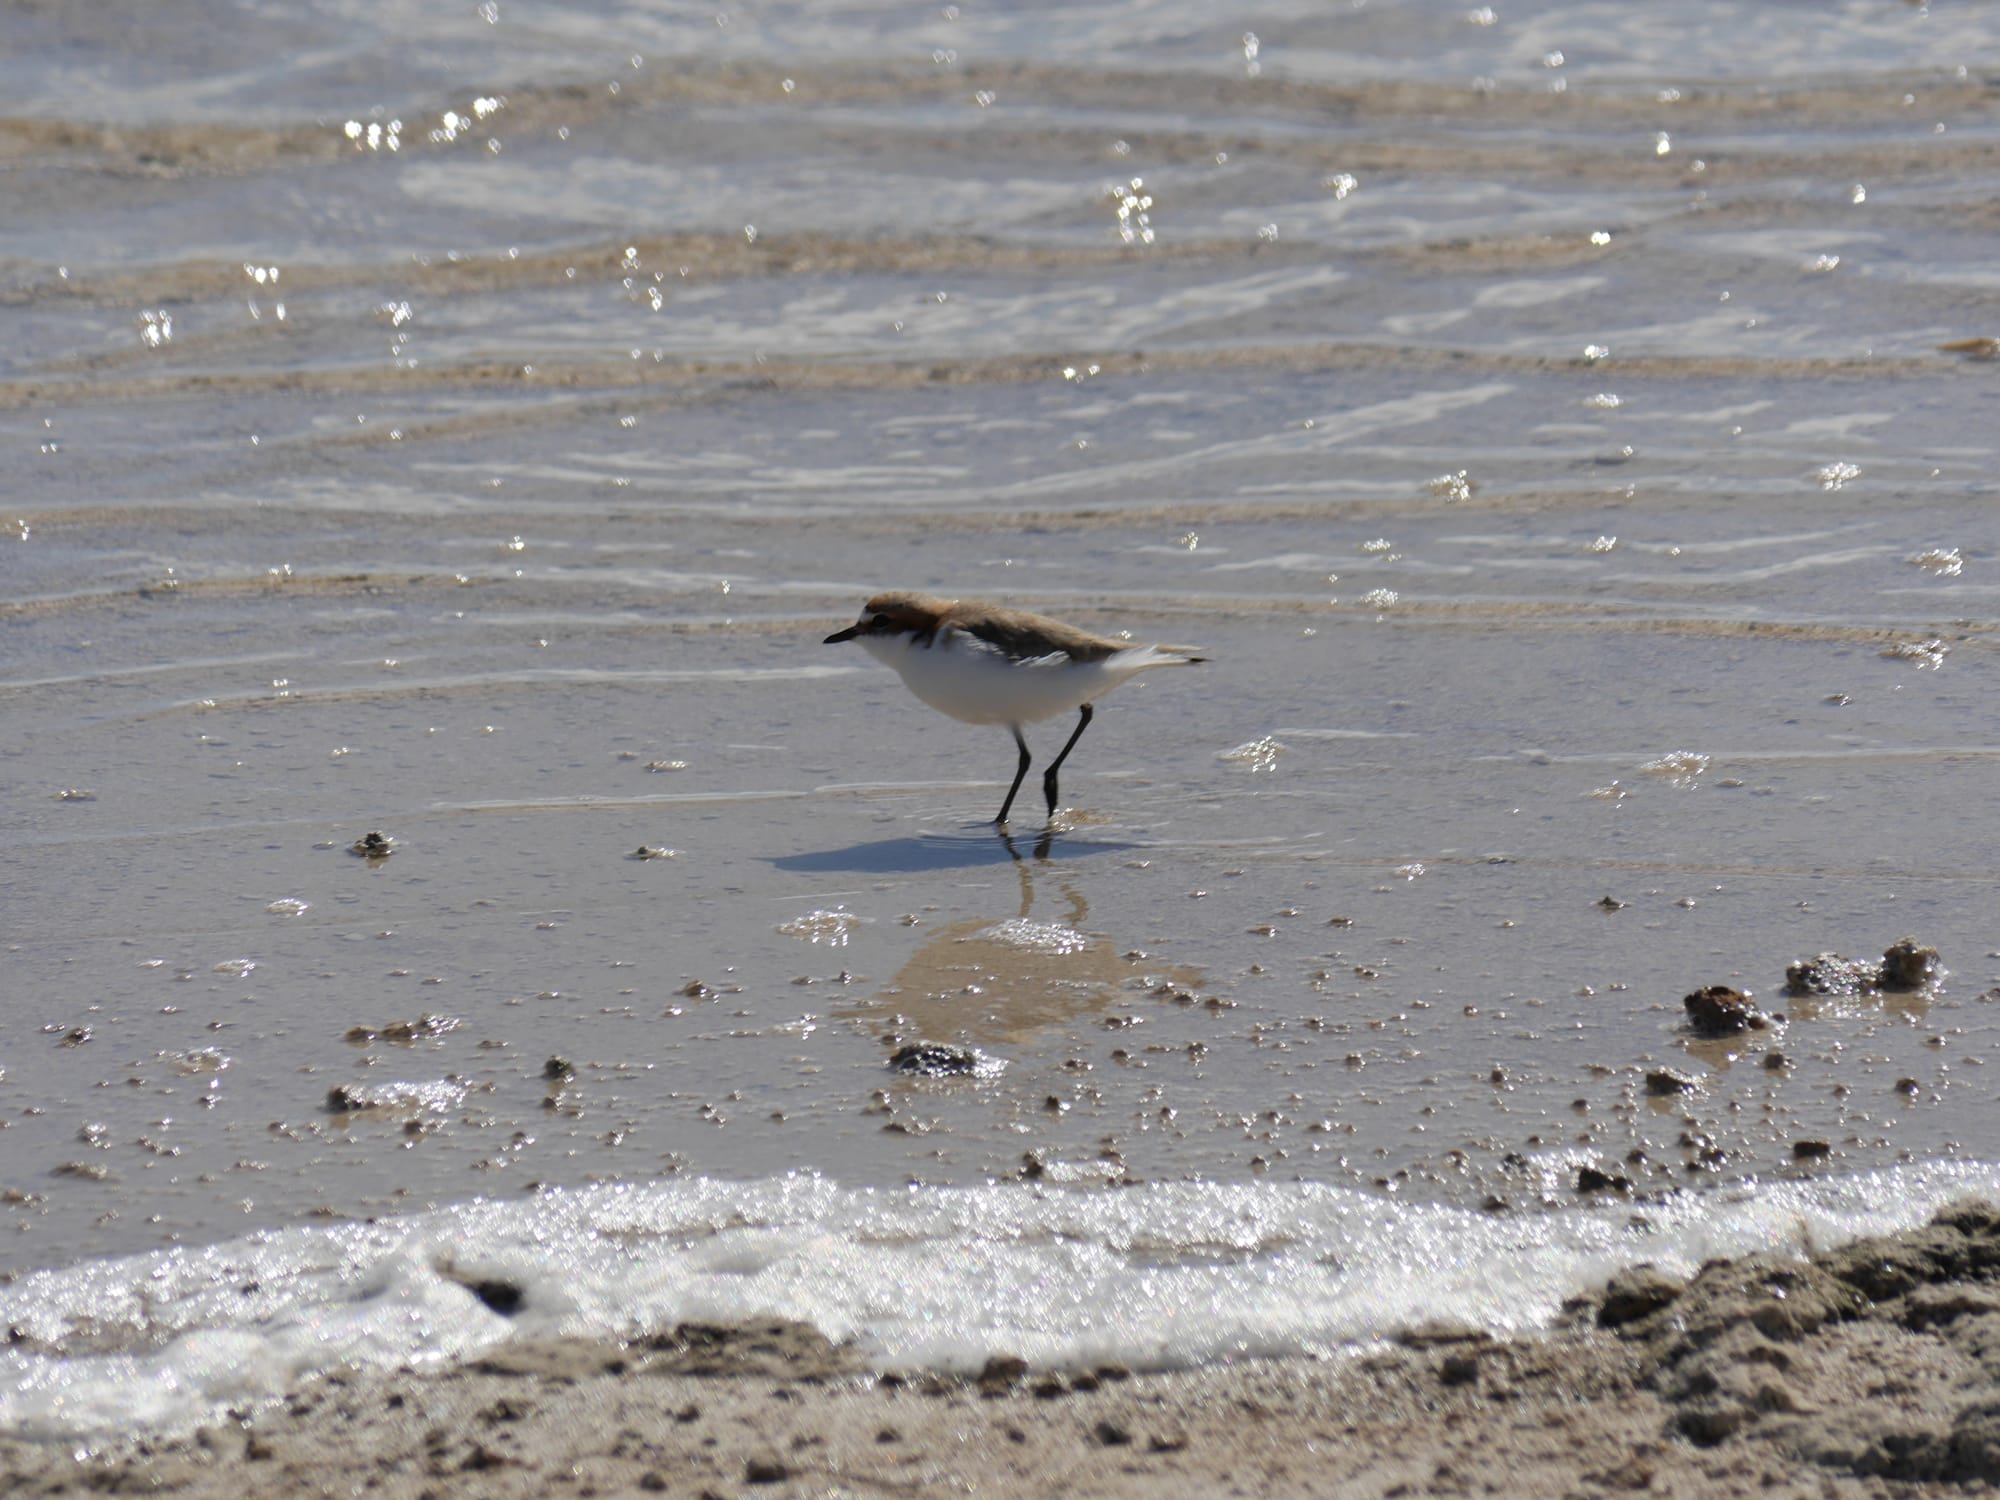 Photo by Author — wading bird at Lake Thetis, Cervantes, WA 6511, Australia